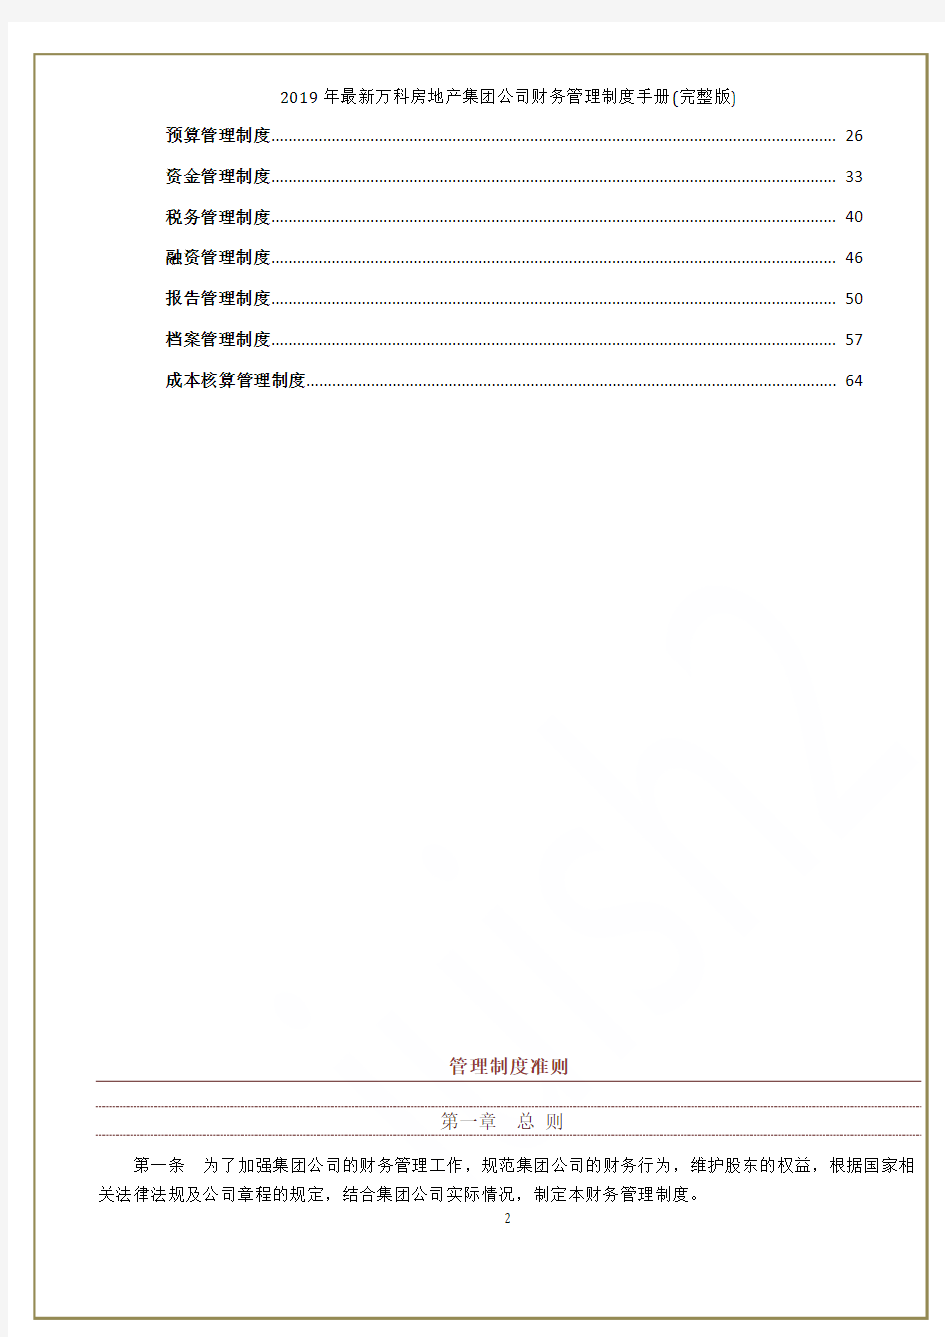 2019年最新万科房地产集团公司财务管理制度手册(完整版)